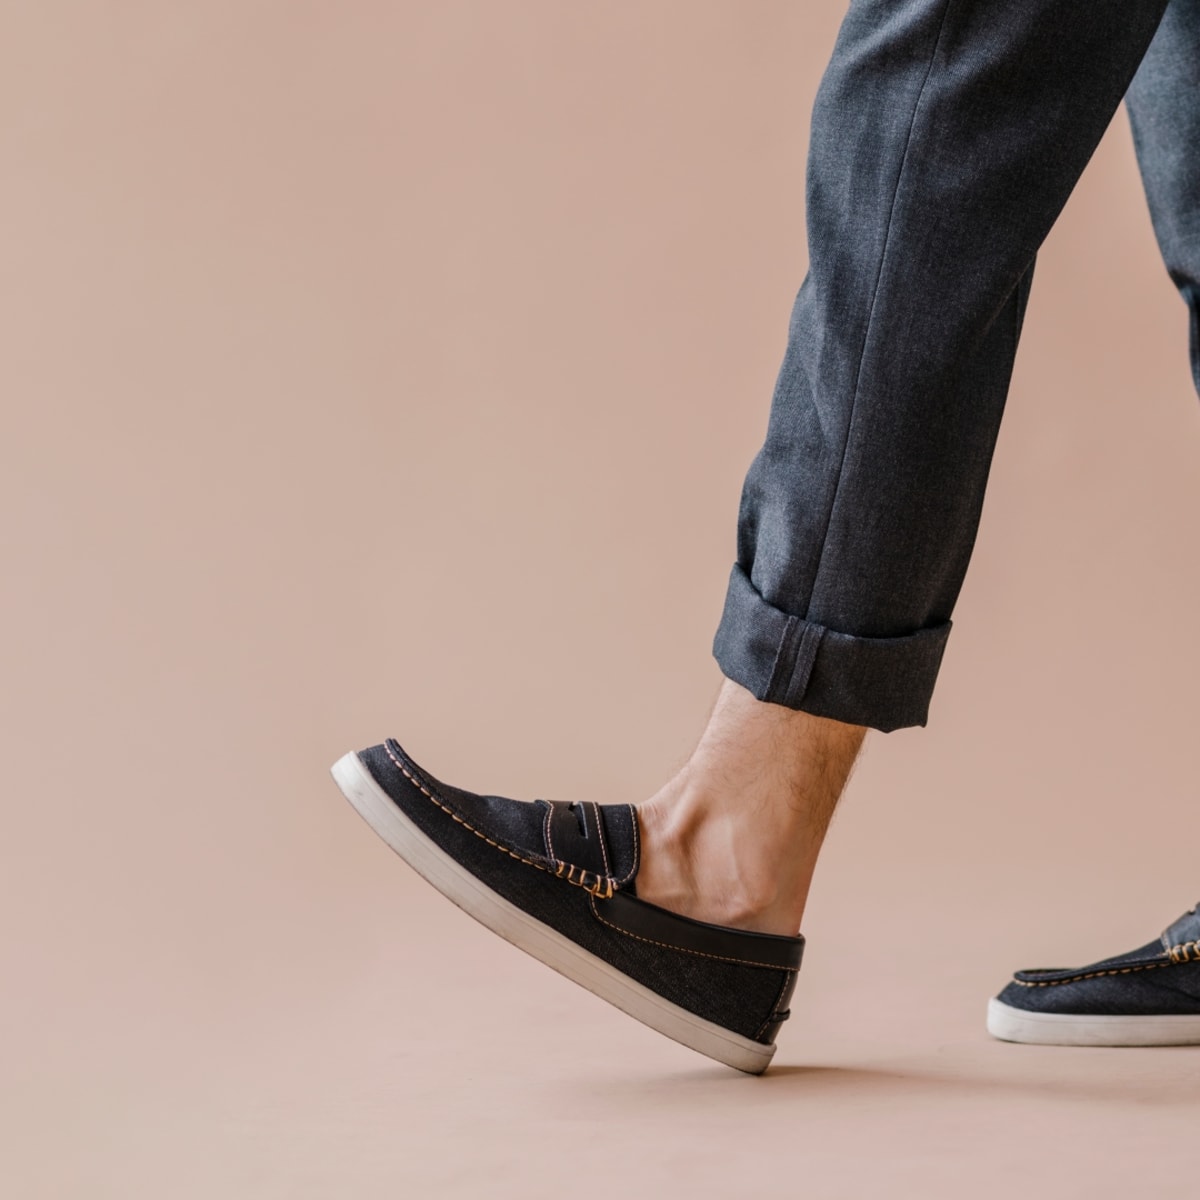 mengsel Zachtmoedigheid bezoek The Best Slip-on Shoes For Men | Men's Journal - Men's Journal